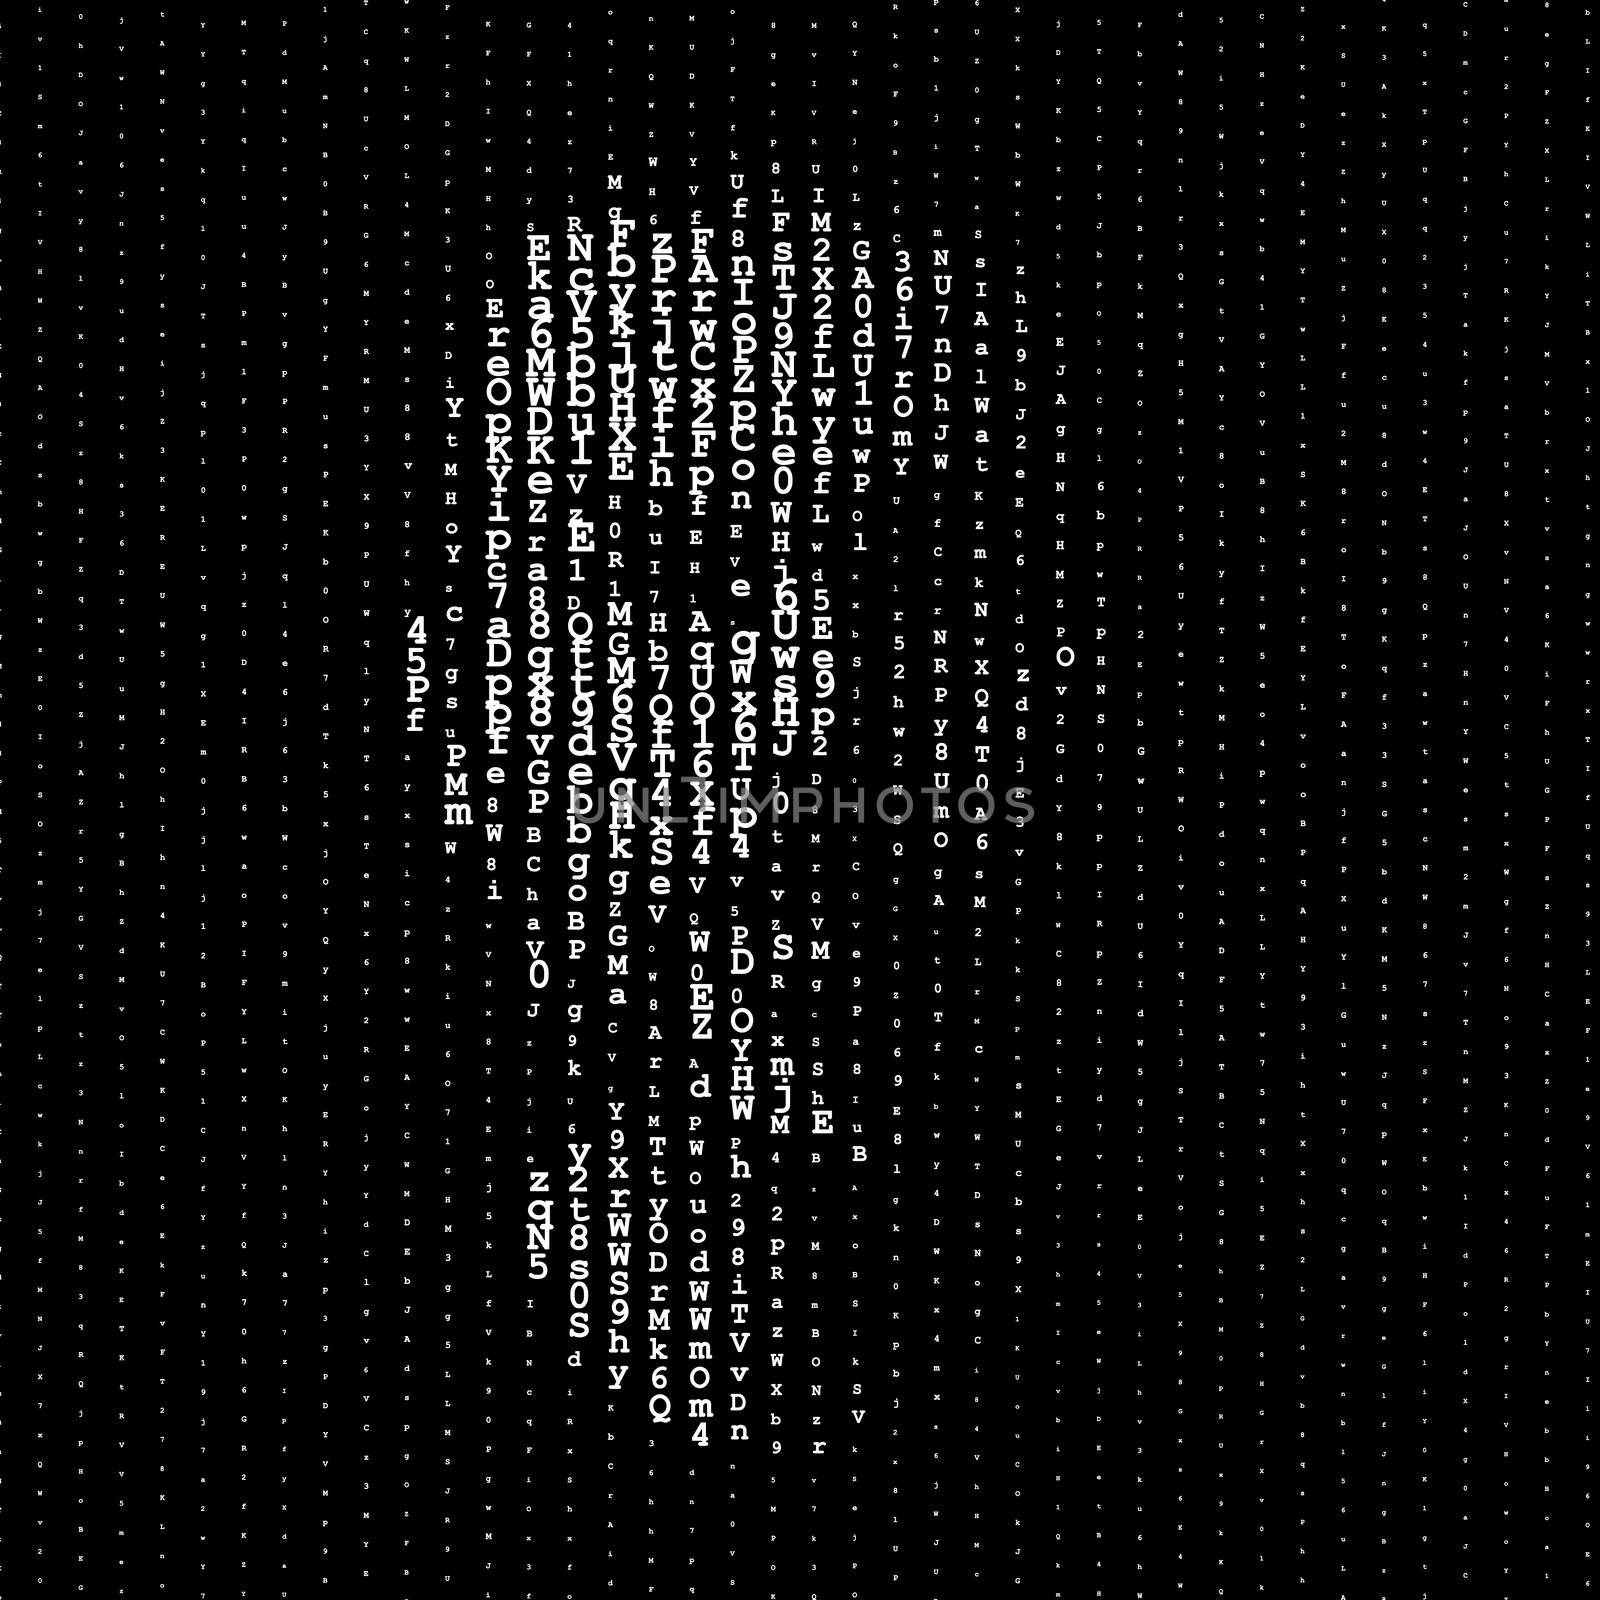 Man portrait, matrix concept illustration by dutourdumonde